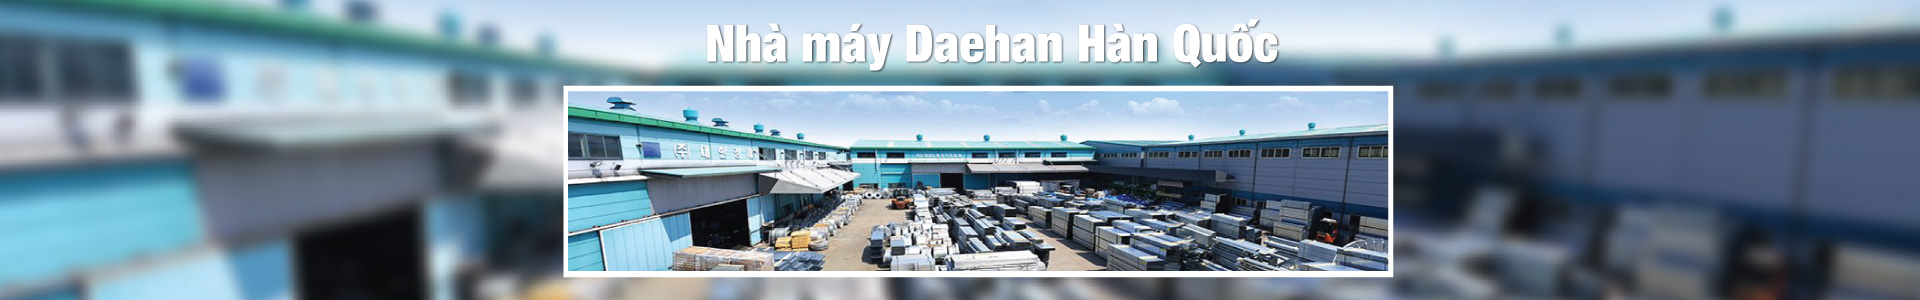  Giới thiệu Tập đoàn Daehan